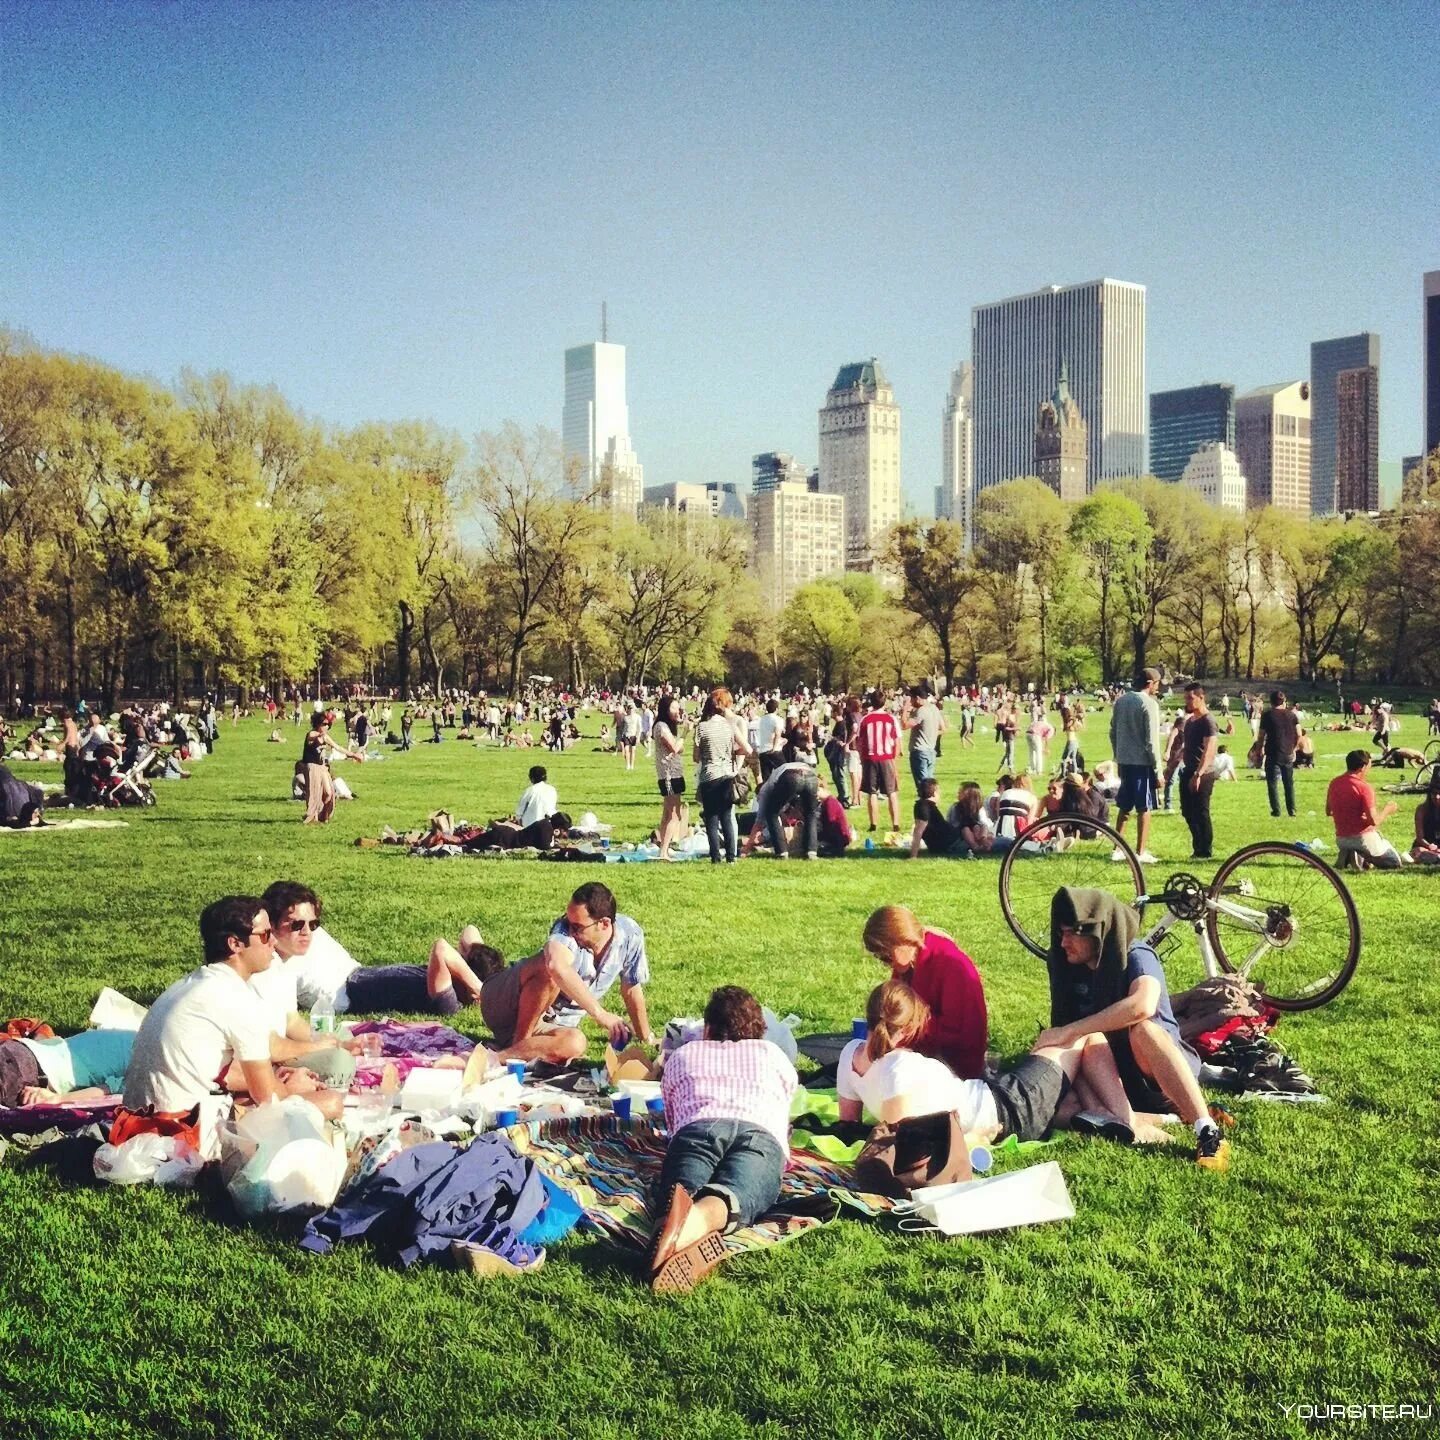 Lot of people in the park. Пикник в Центральном парке Нью-Йорка. Центральный парк Нью-Йорк летом. Централ парк Нью-Йорка газон. Фотосессия в централ парке Нью Йорка.